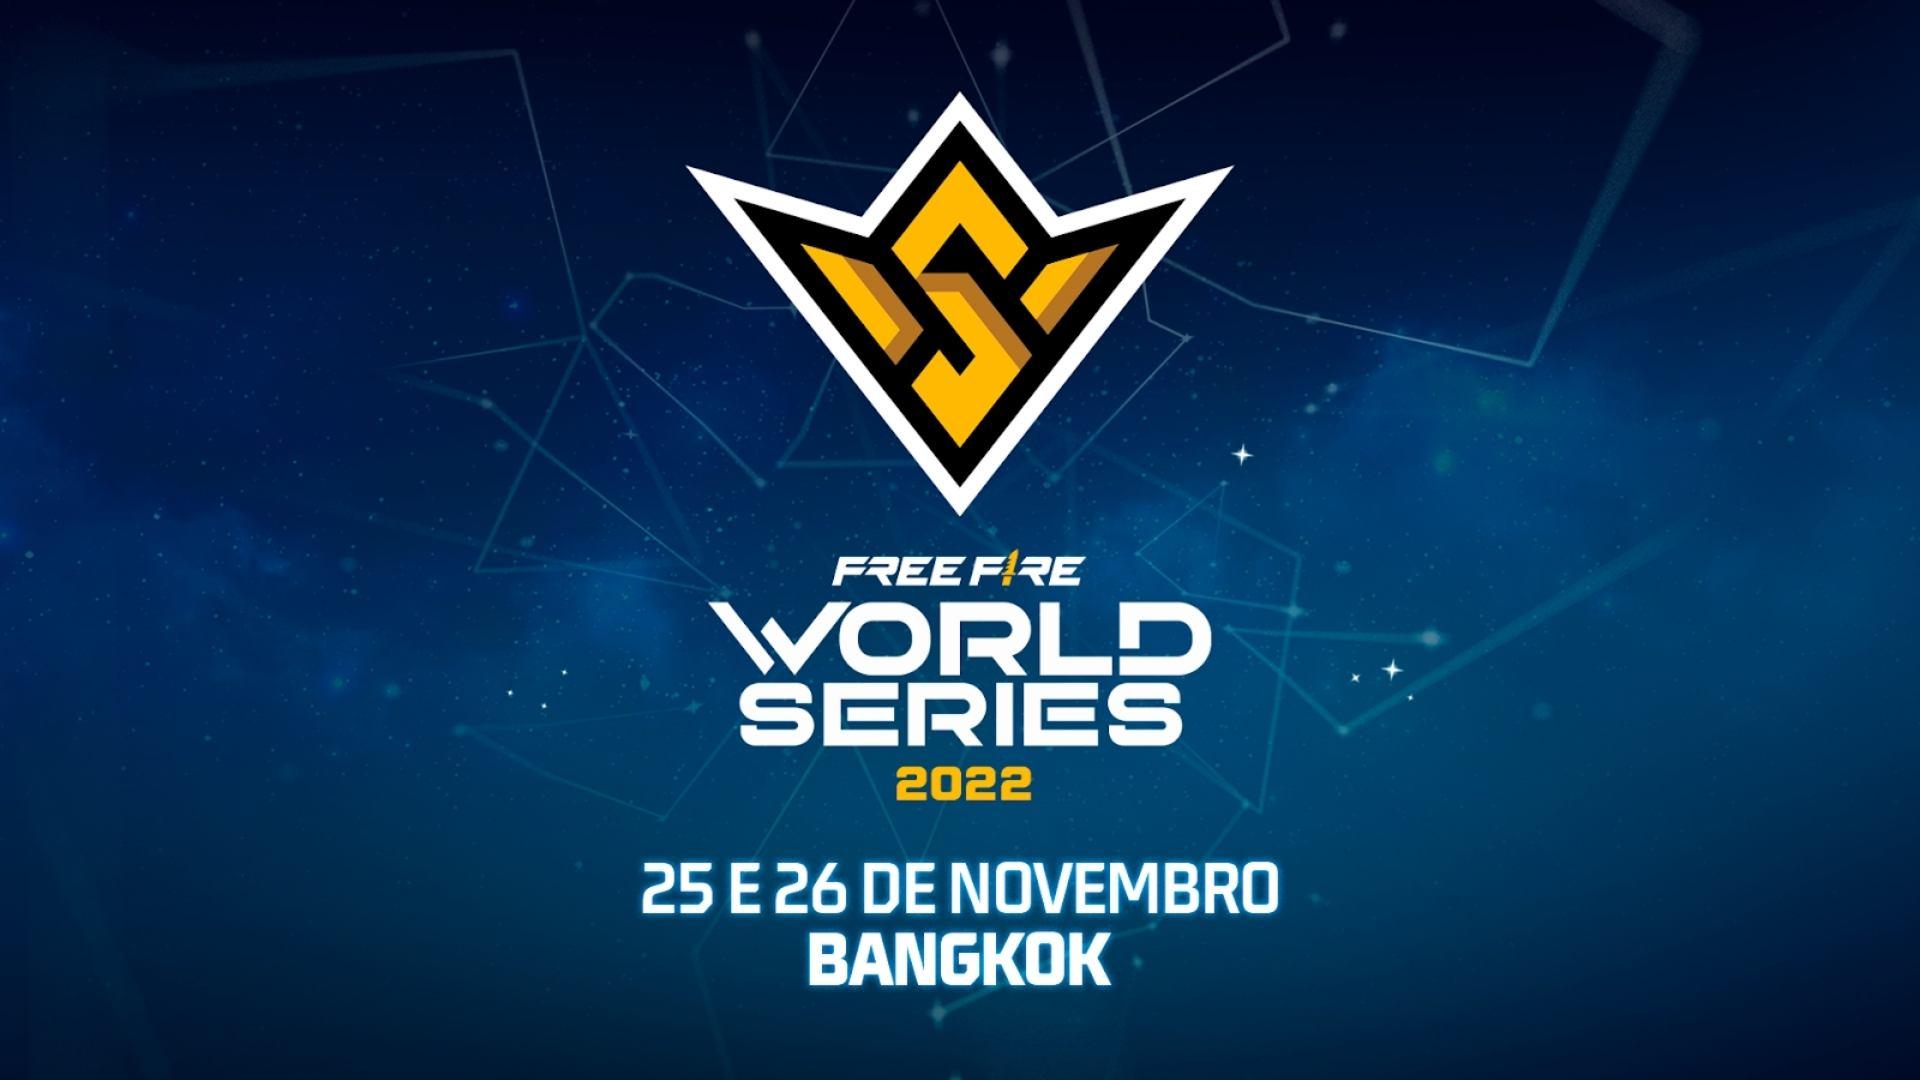 FF Mundial: Free Fire World Series 2022 akan berlangsung pada bulan November, di Thailand